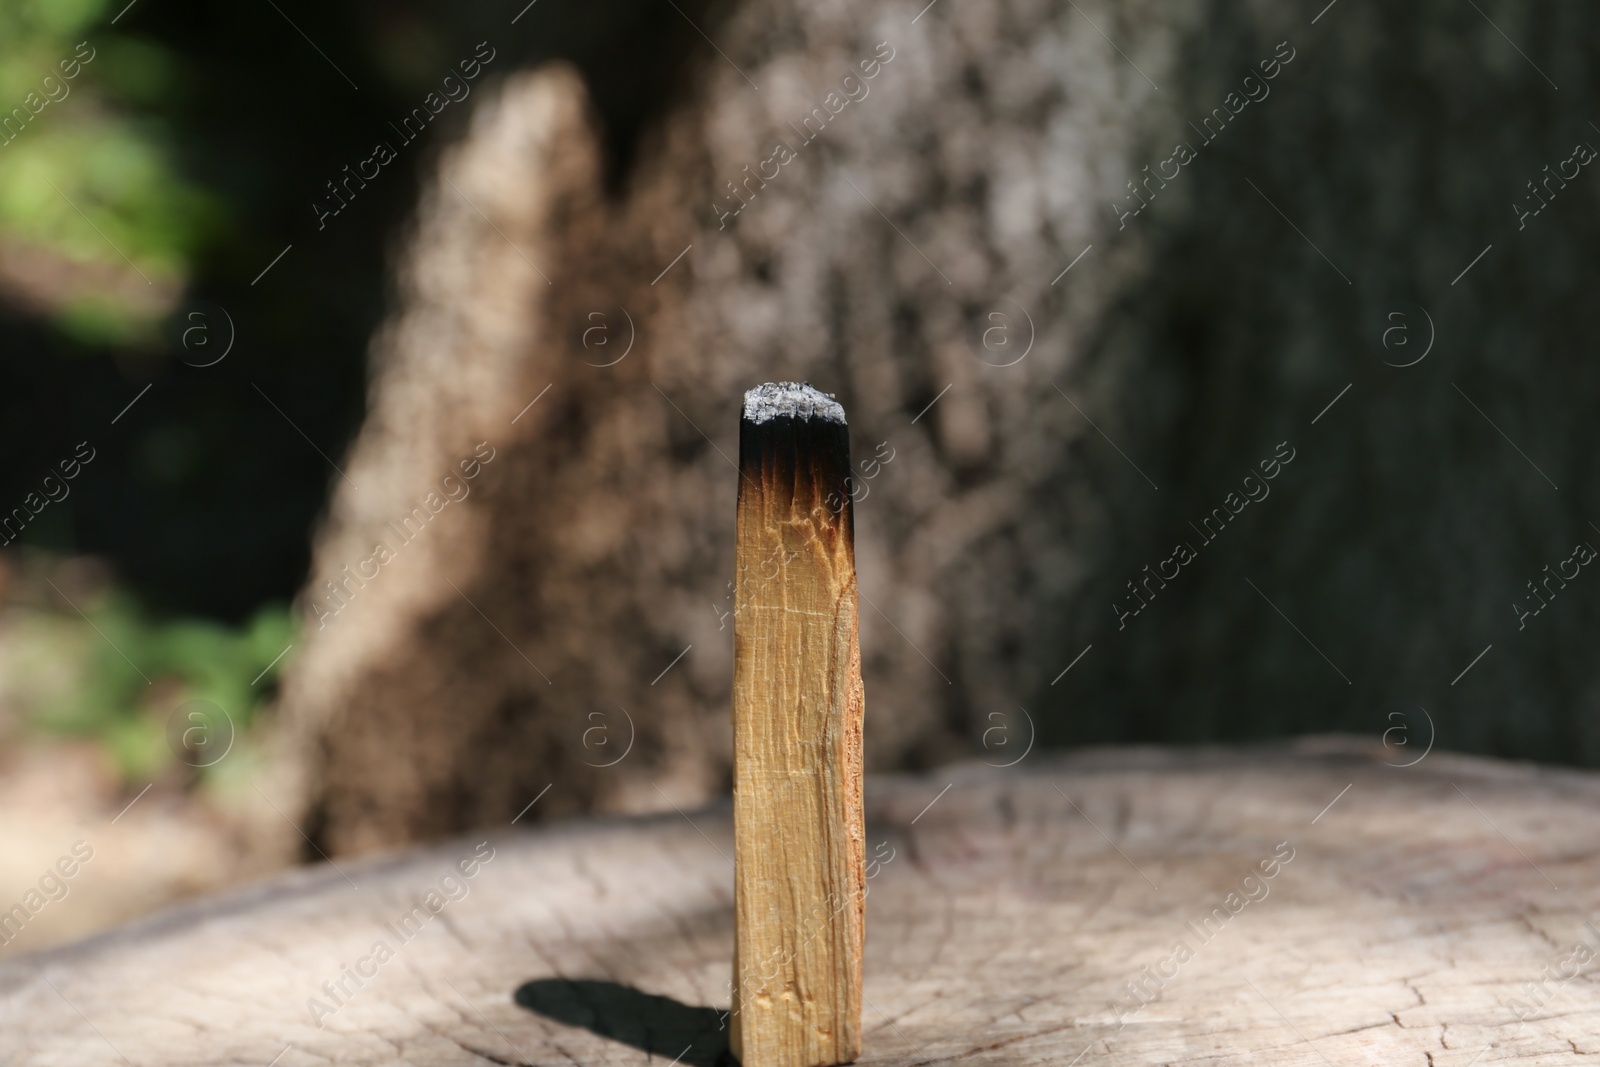 Photo of Smoldering palo santo stick on wooden stump outdoors